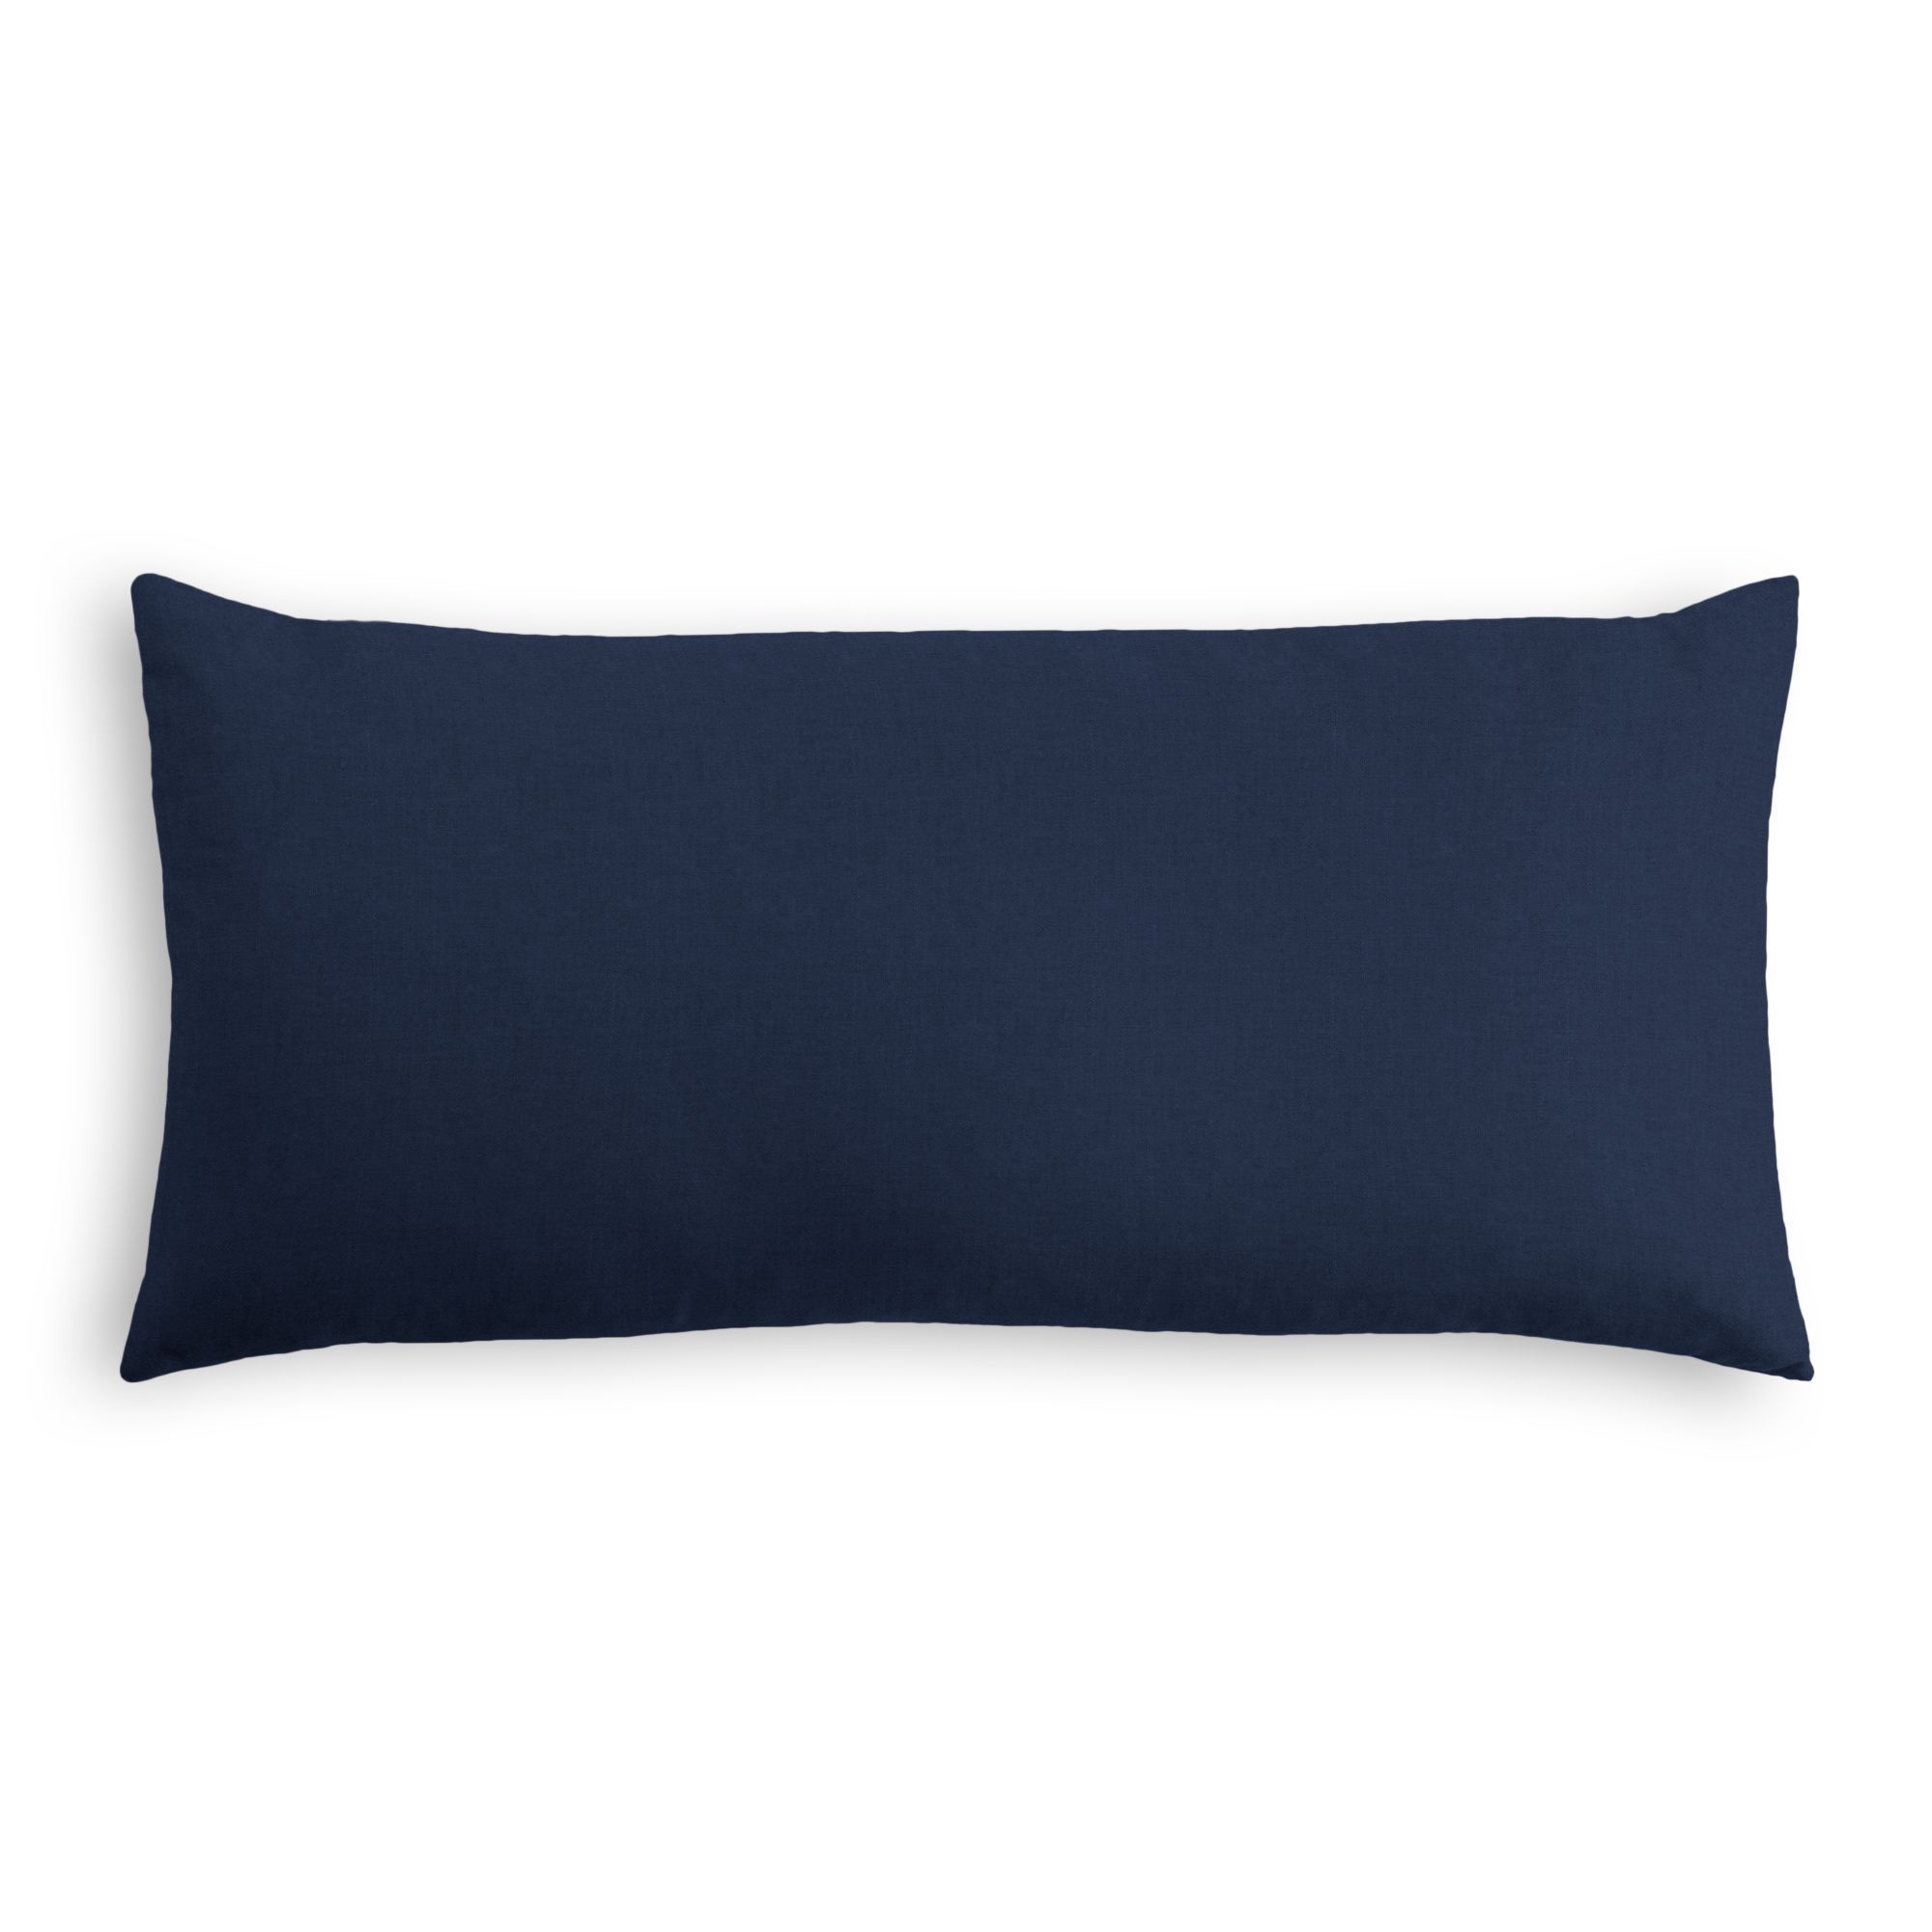 Classic Linen Lumbar Pillow, Indigo, 18" x 12" - Image 0